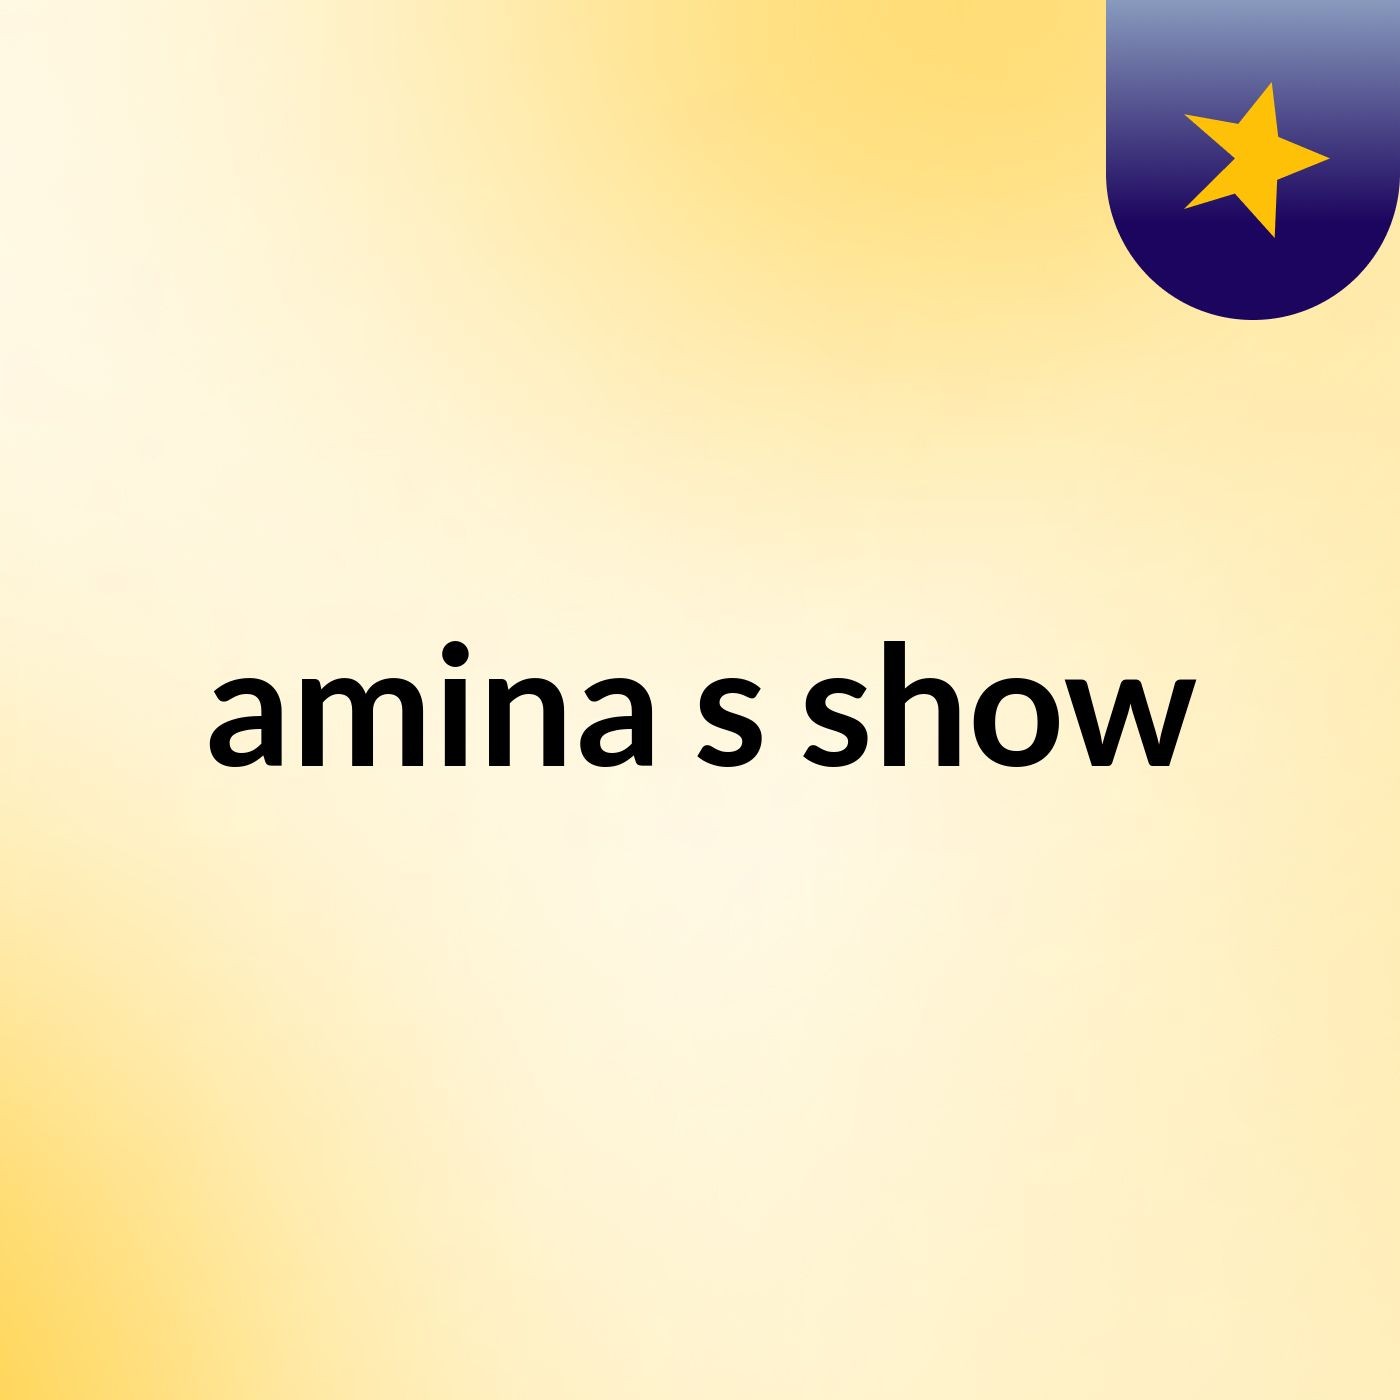 amina's show